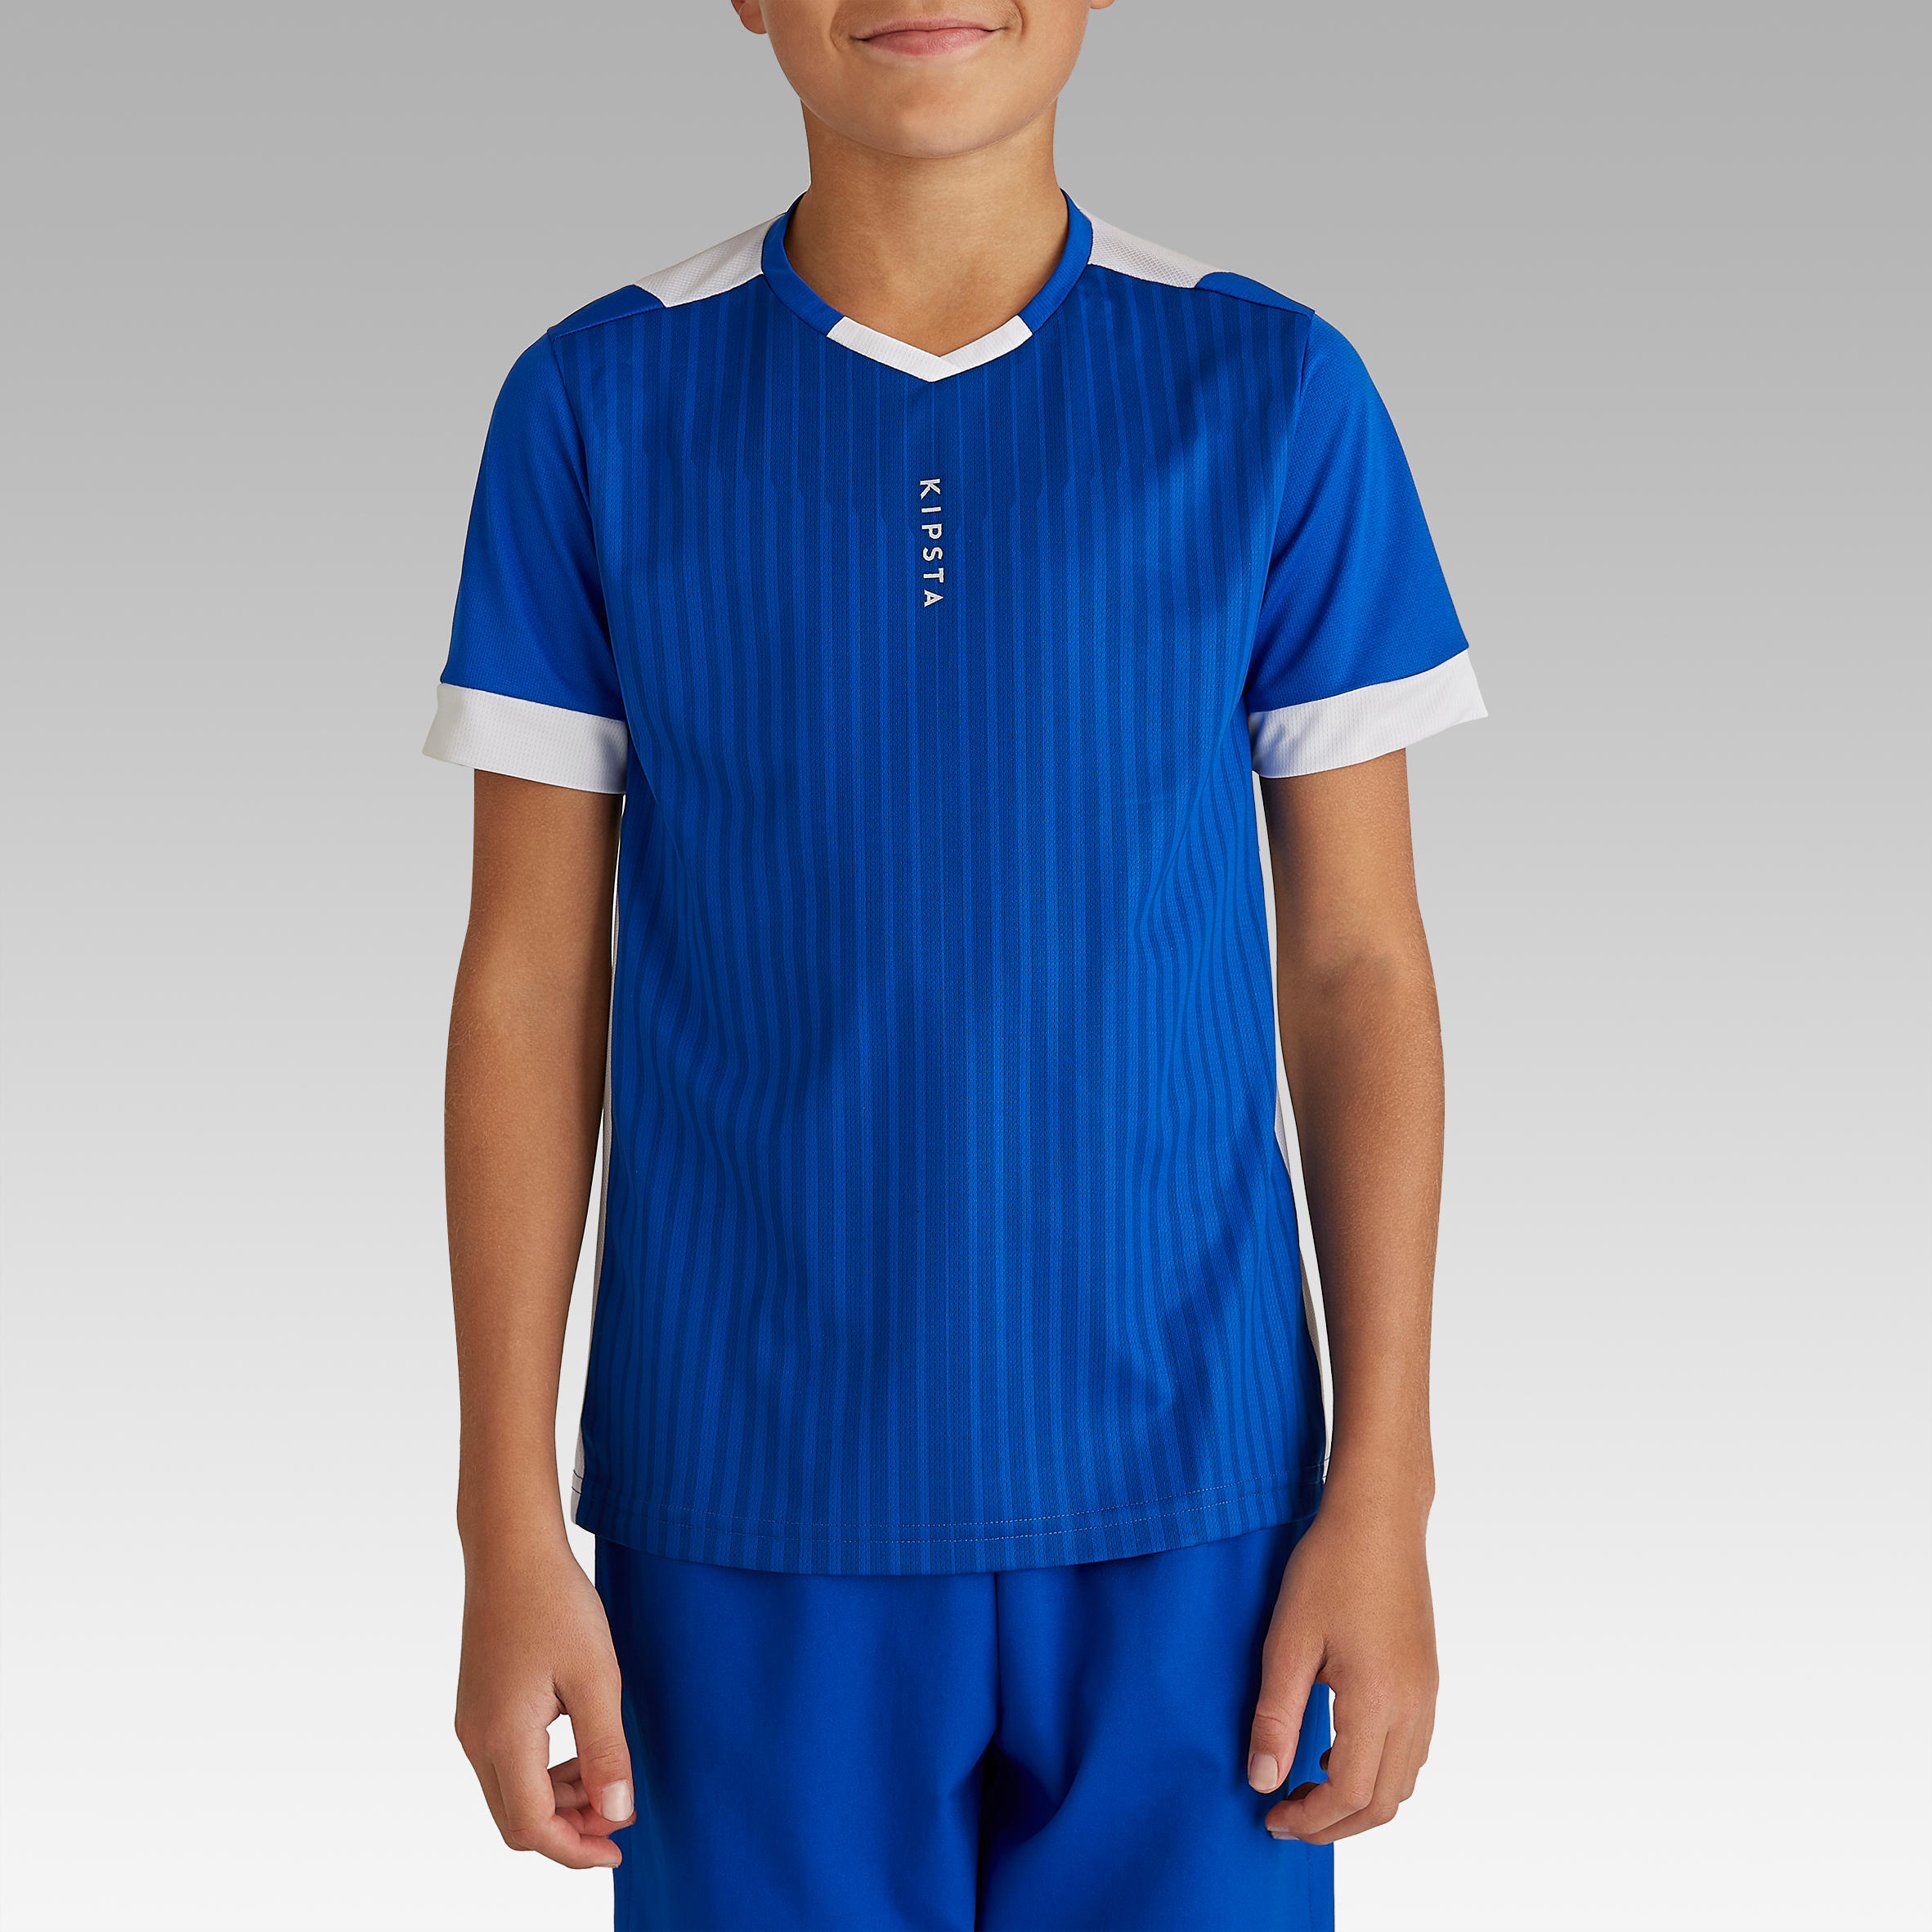 Kids' Short-Sleeved Football Shirt F500 - Blue 2/9